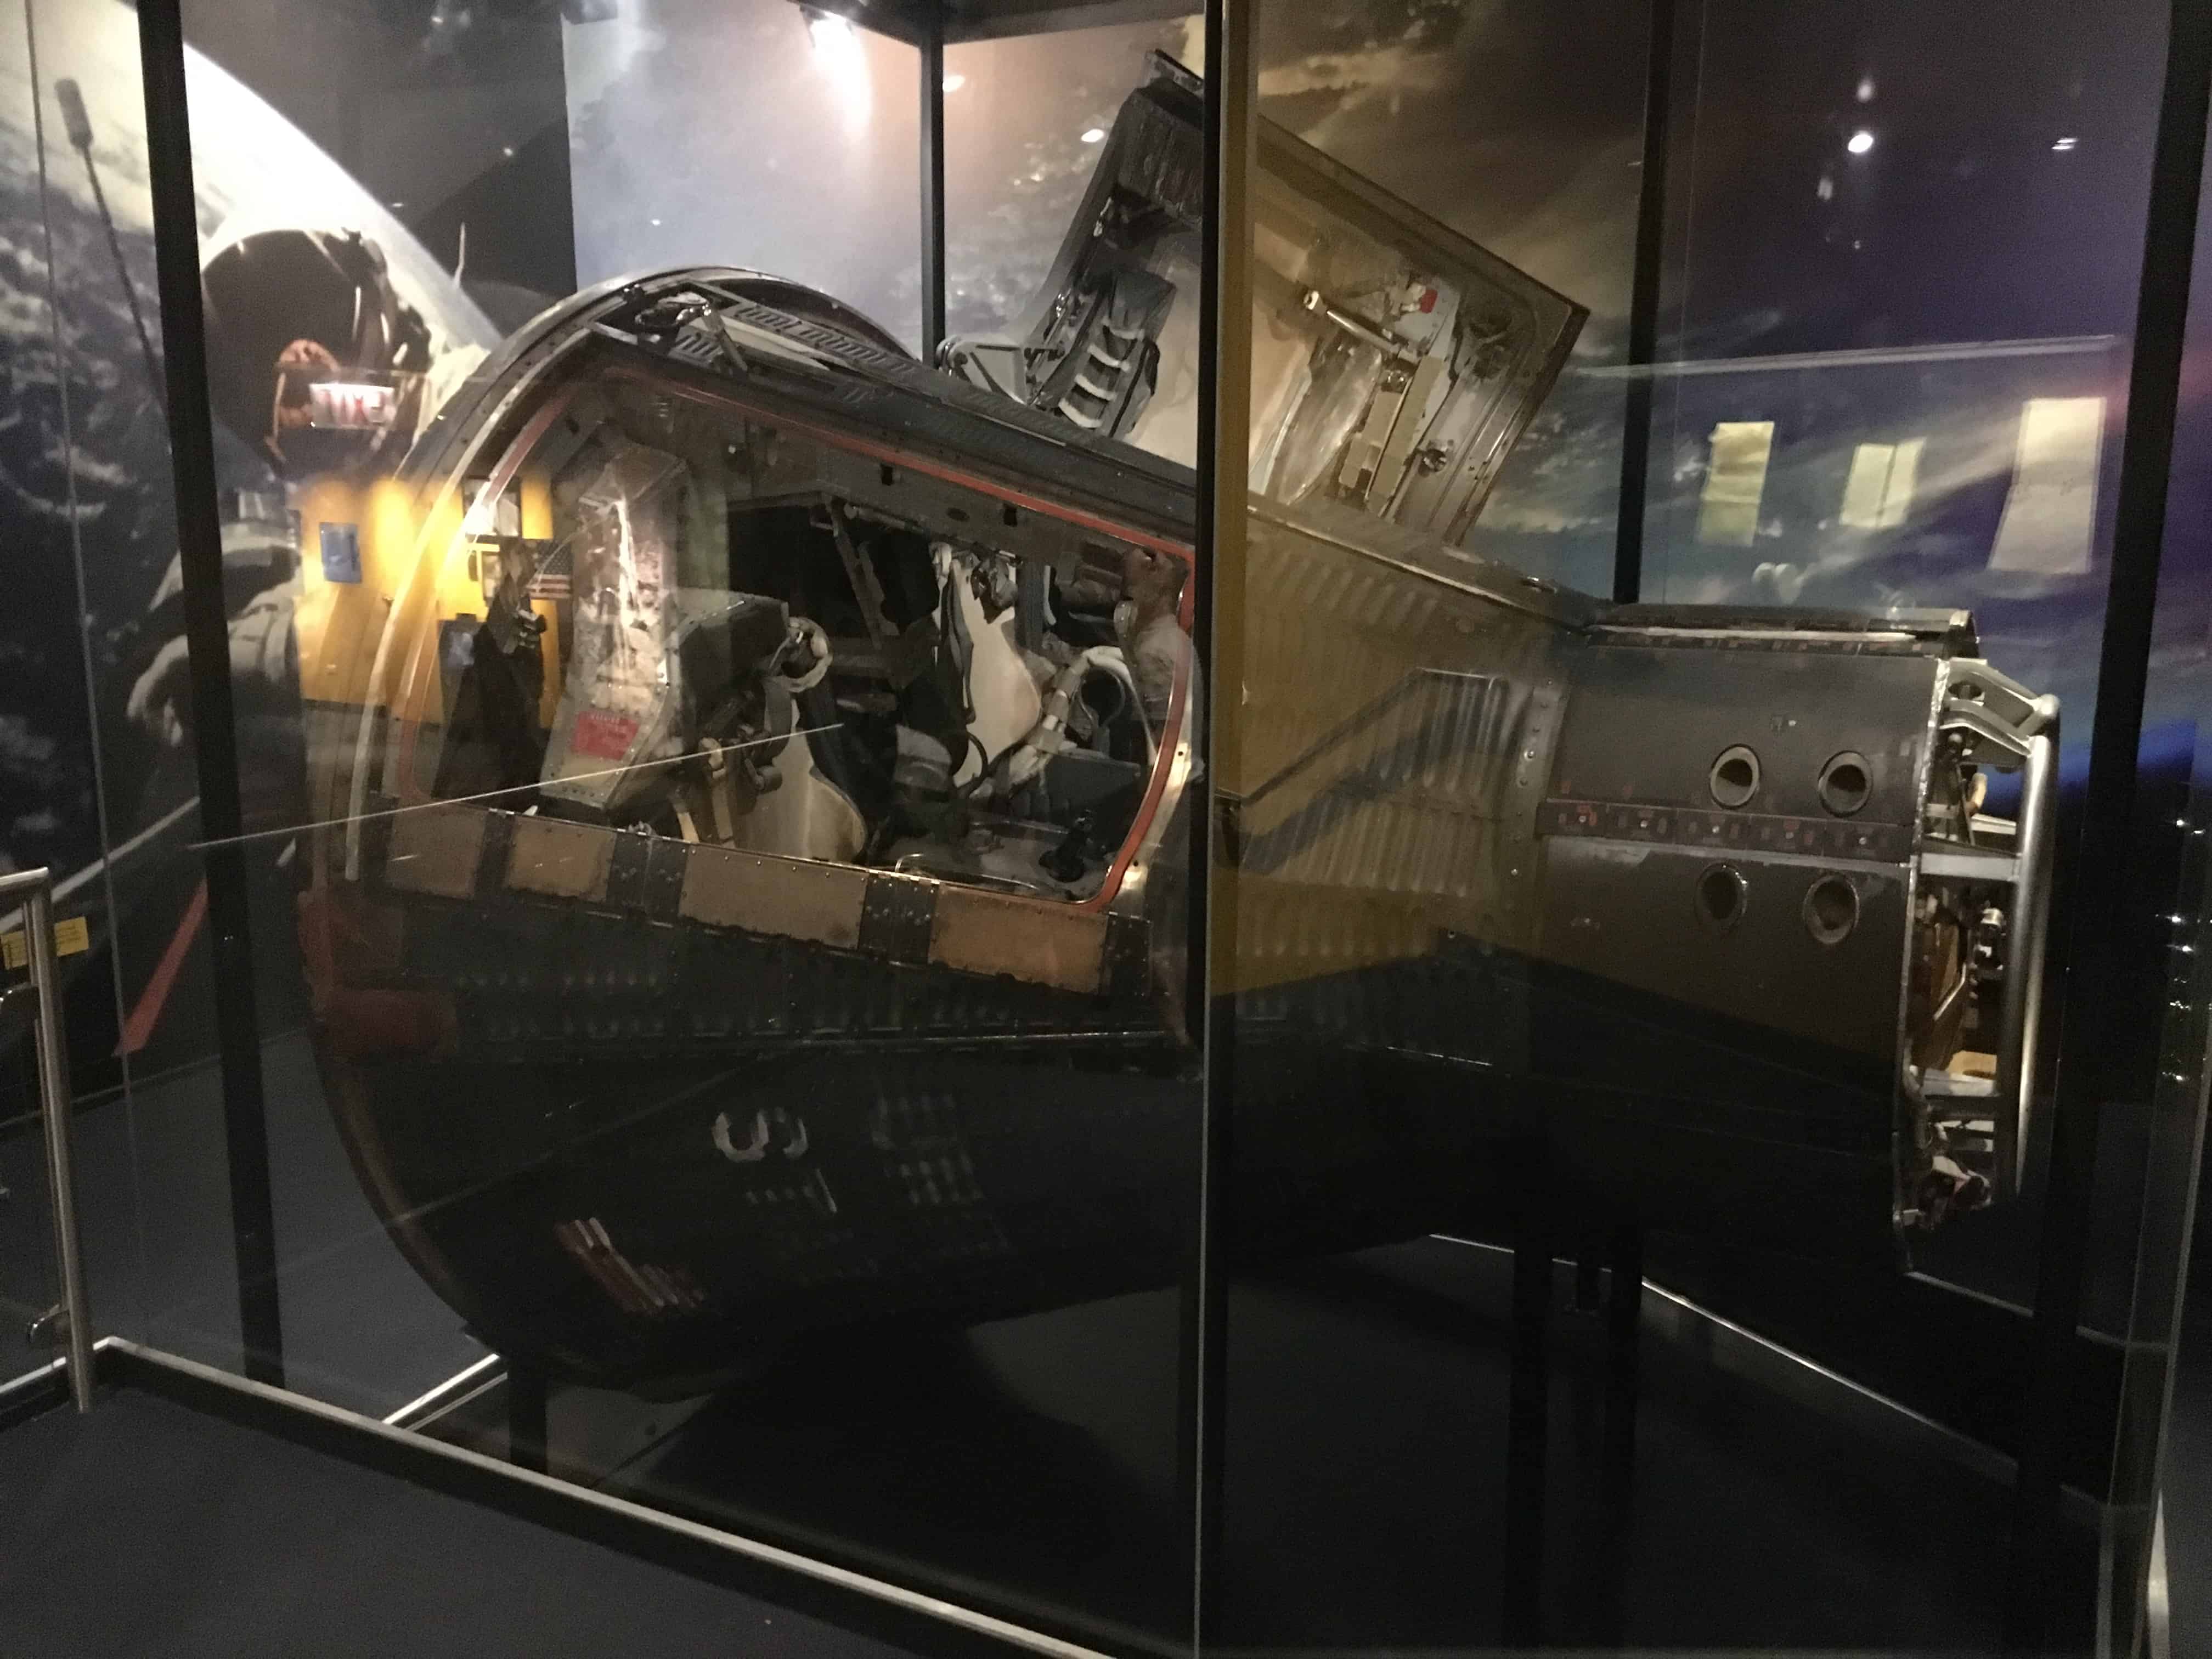 Gemini 12 capsule at Mission Moon at the Adler Planetarium in Chicago, Illinois